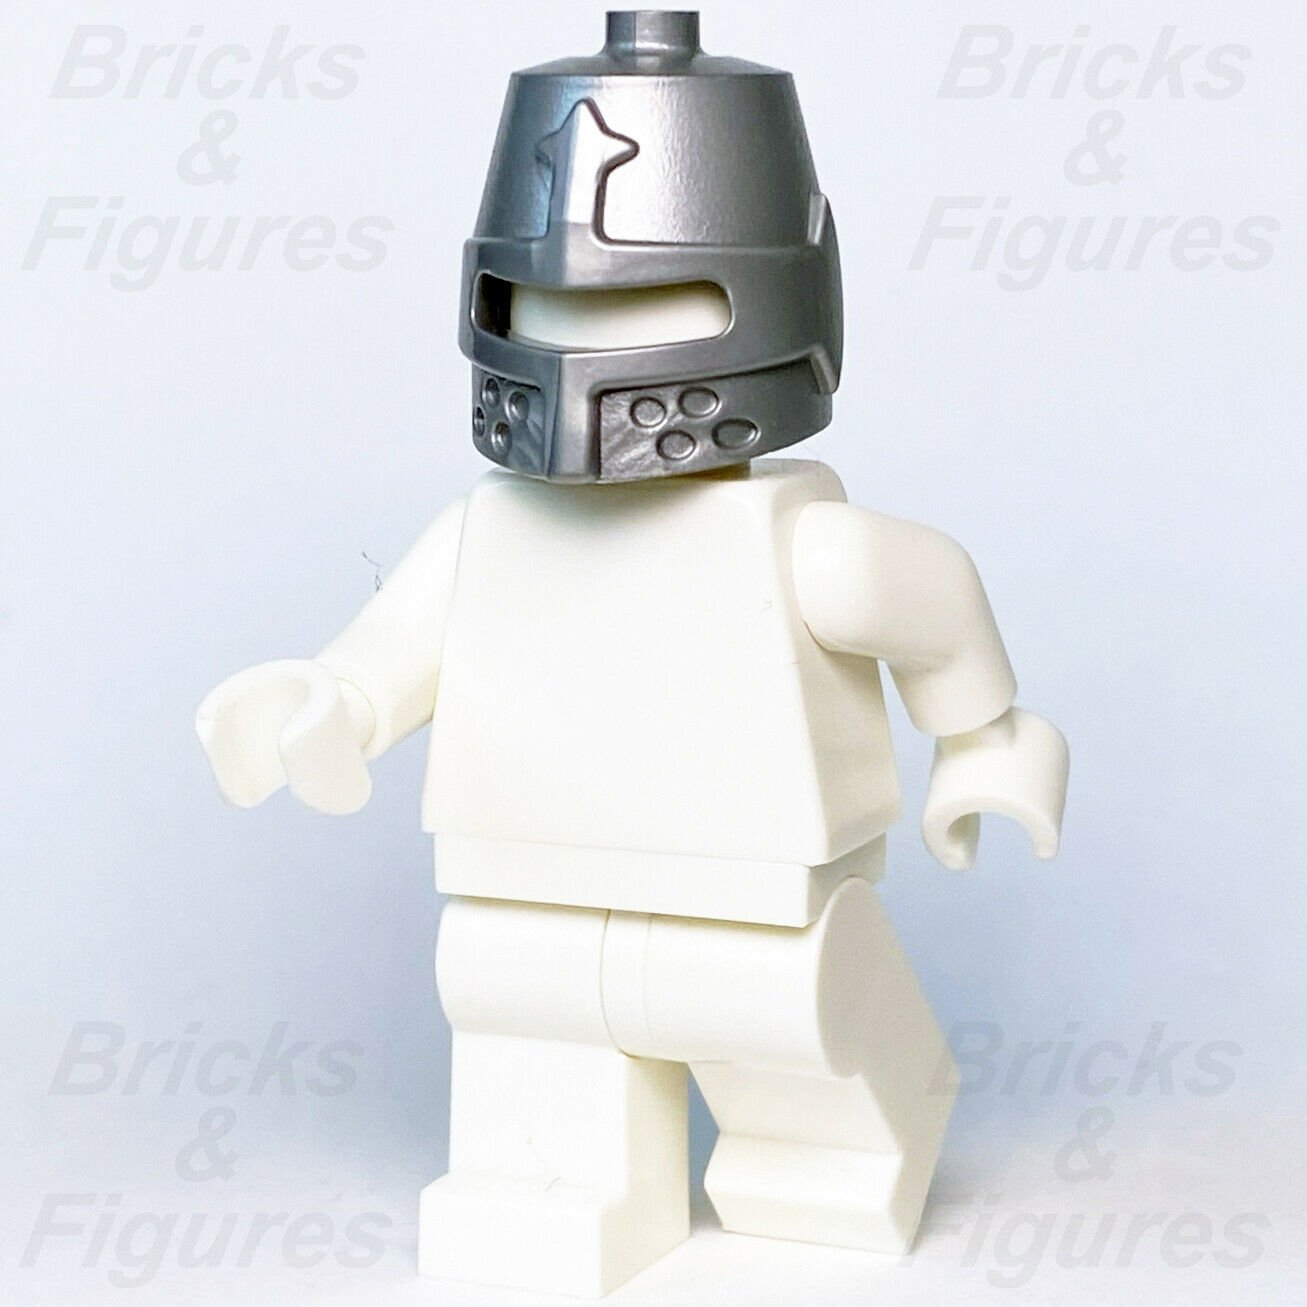 Ideas LEGO Castle Knight Closed Helmet Minifigure Part 70322 21325 70333 89520 - Bricks & Figures